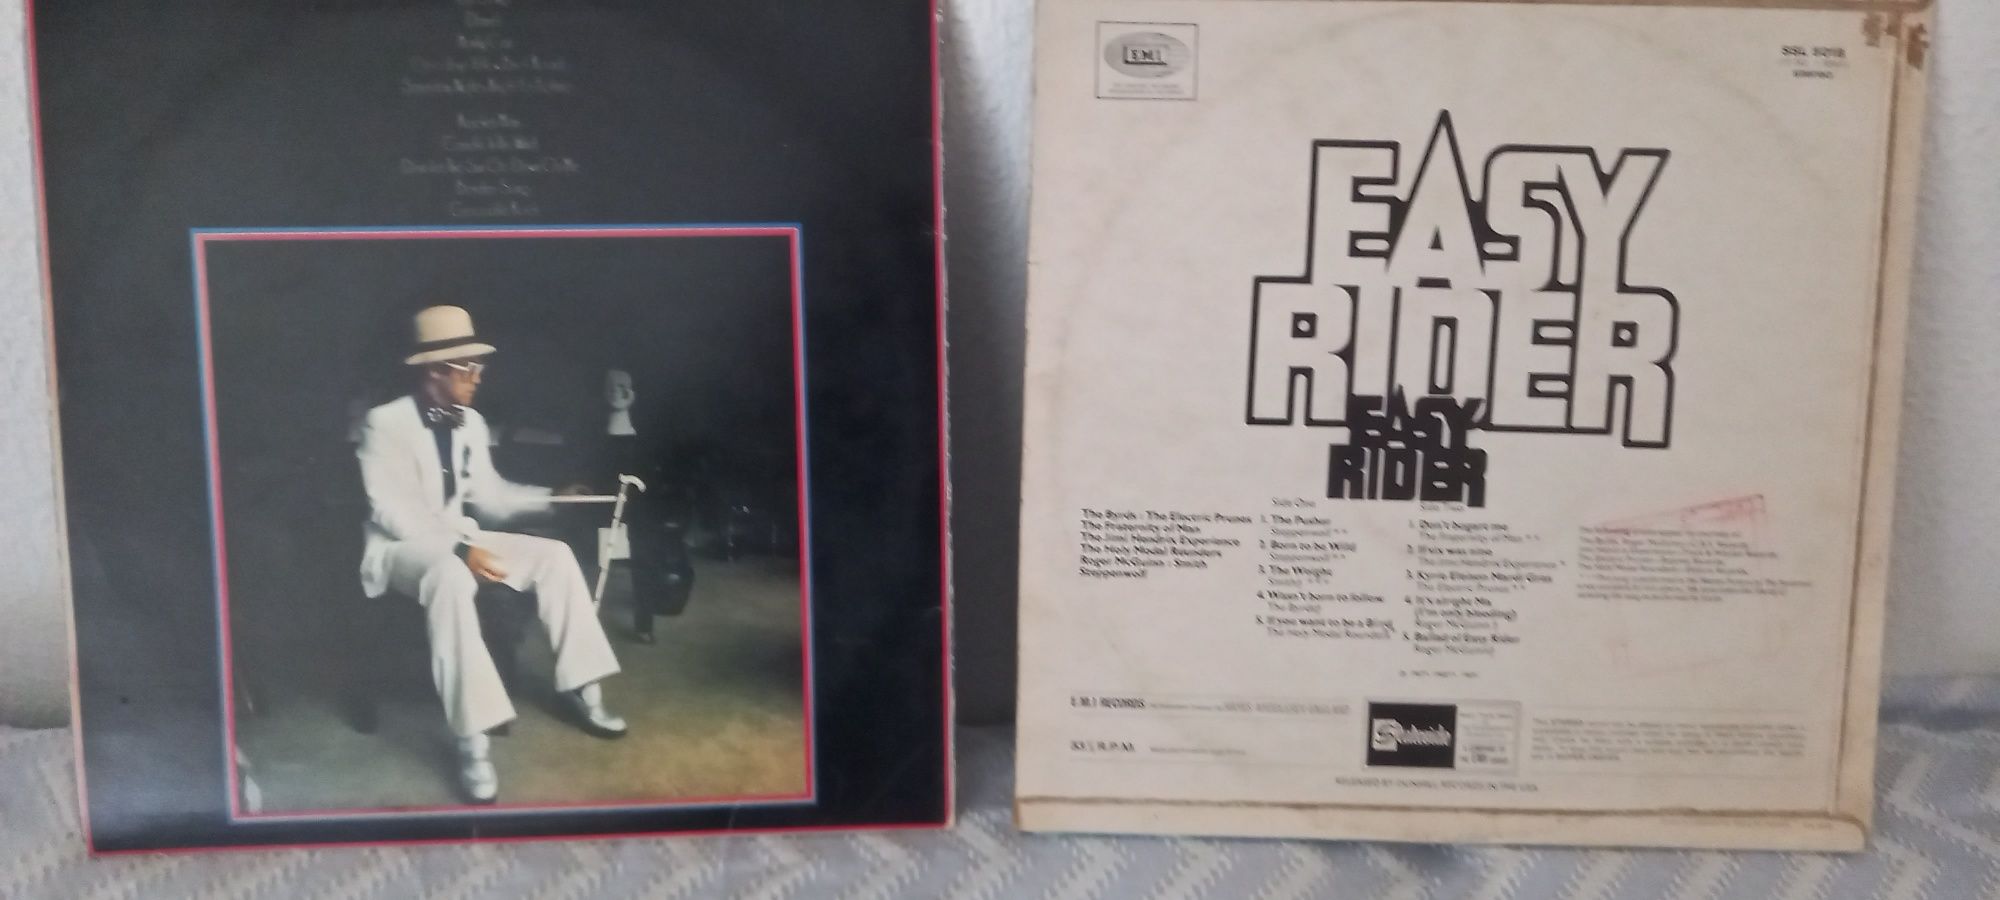 LP de Elton John e Easy rider